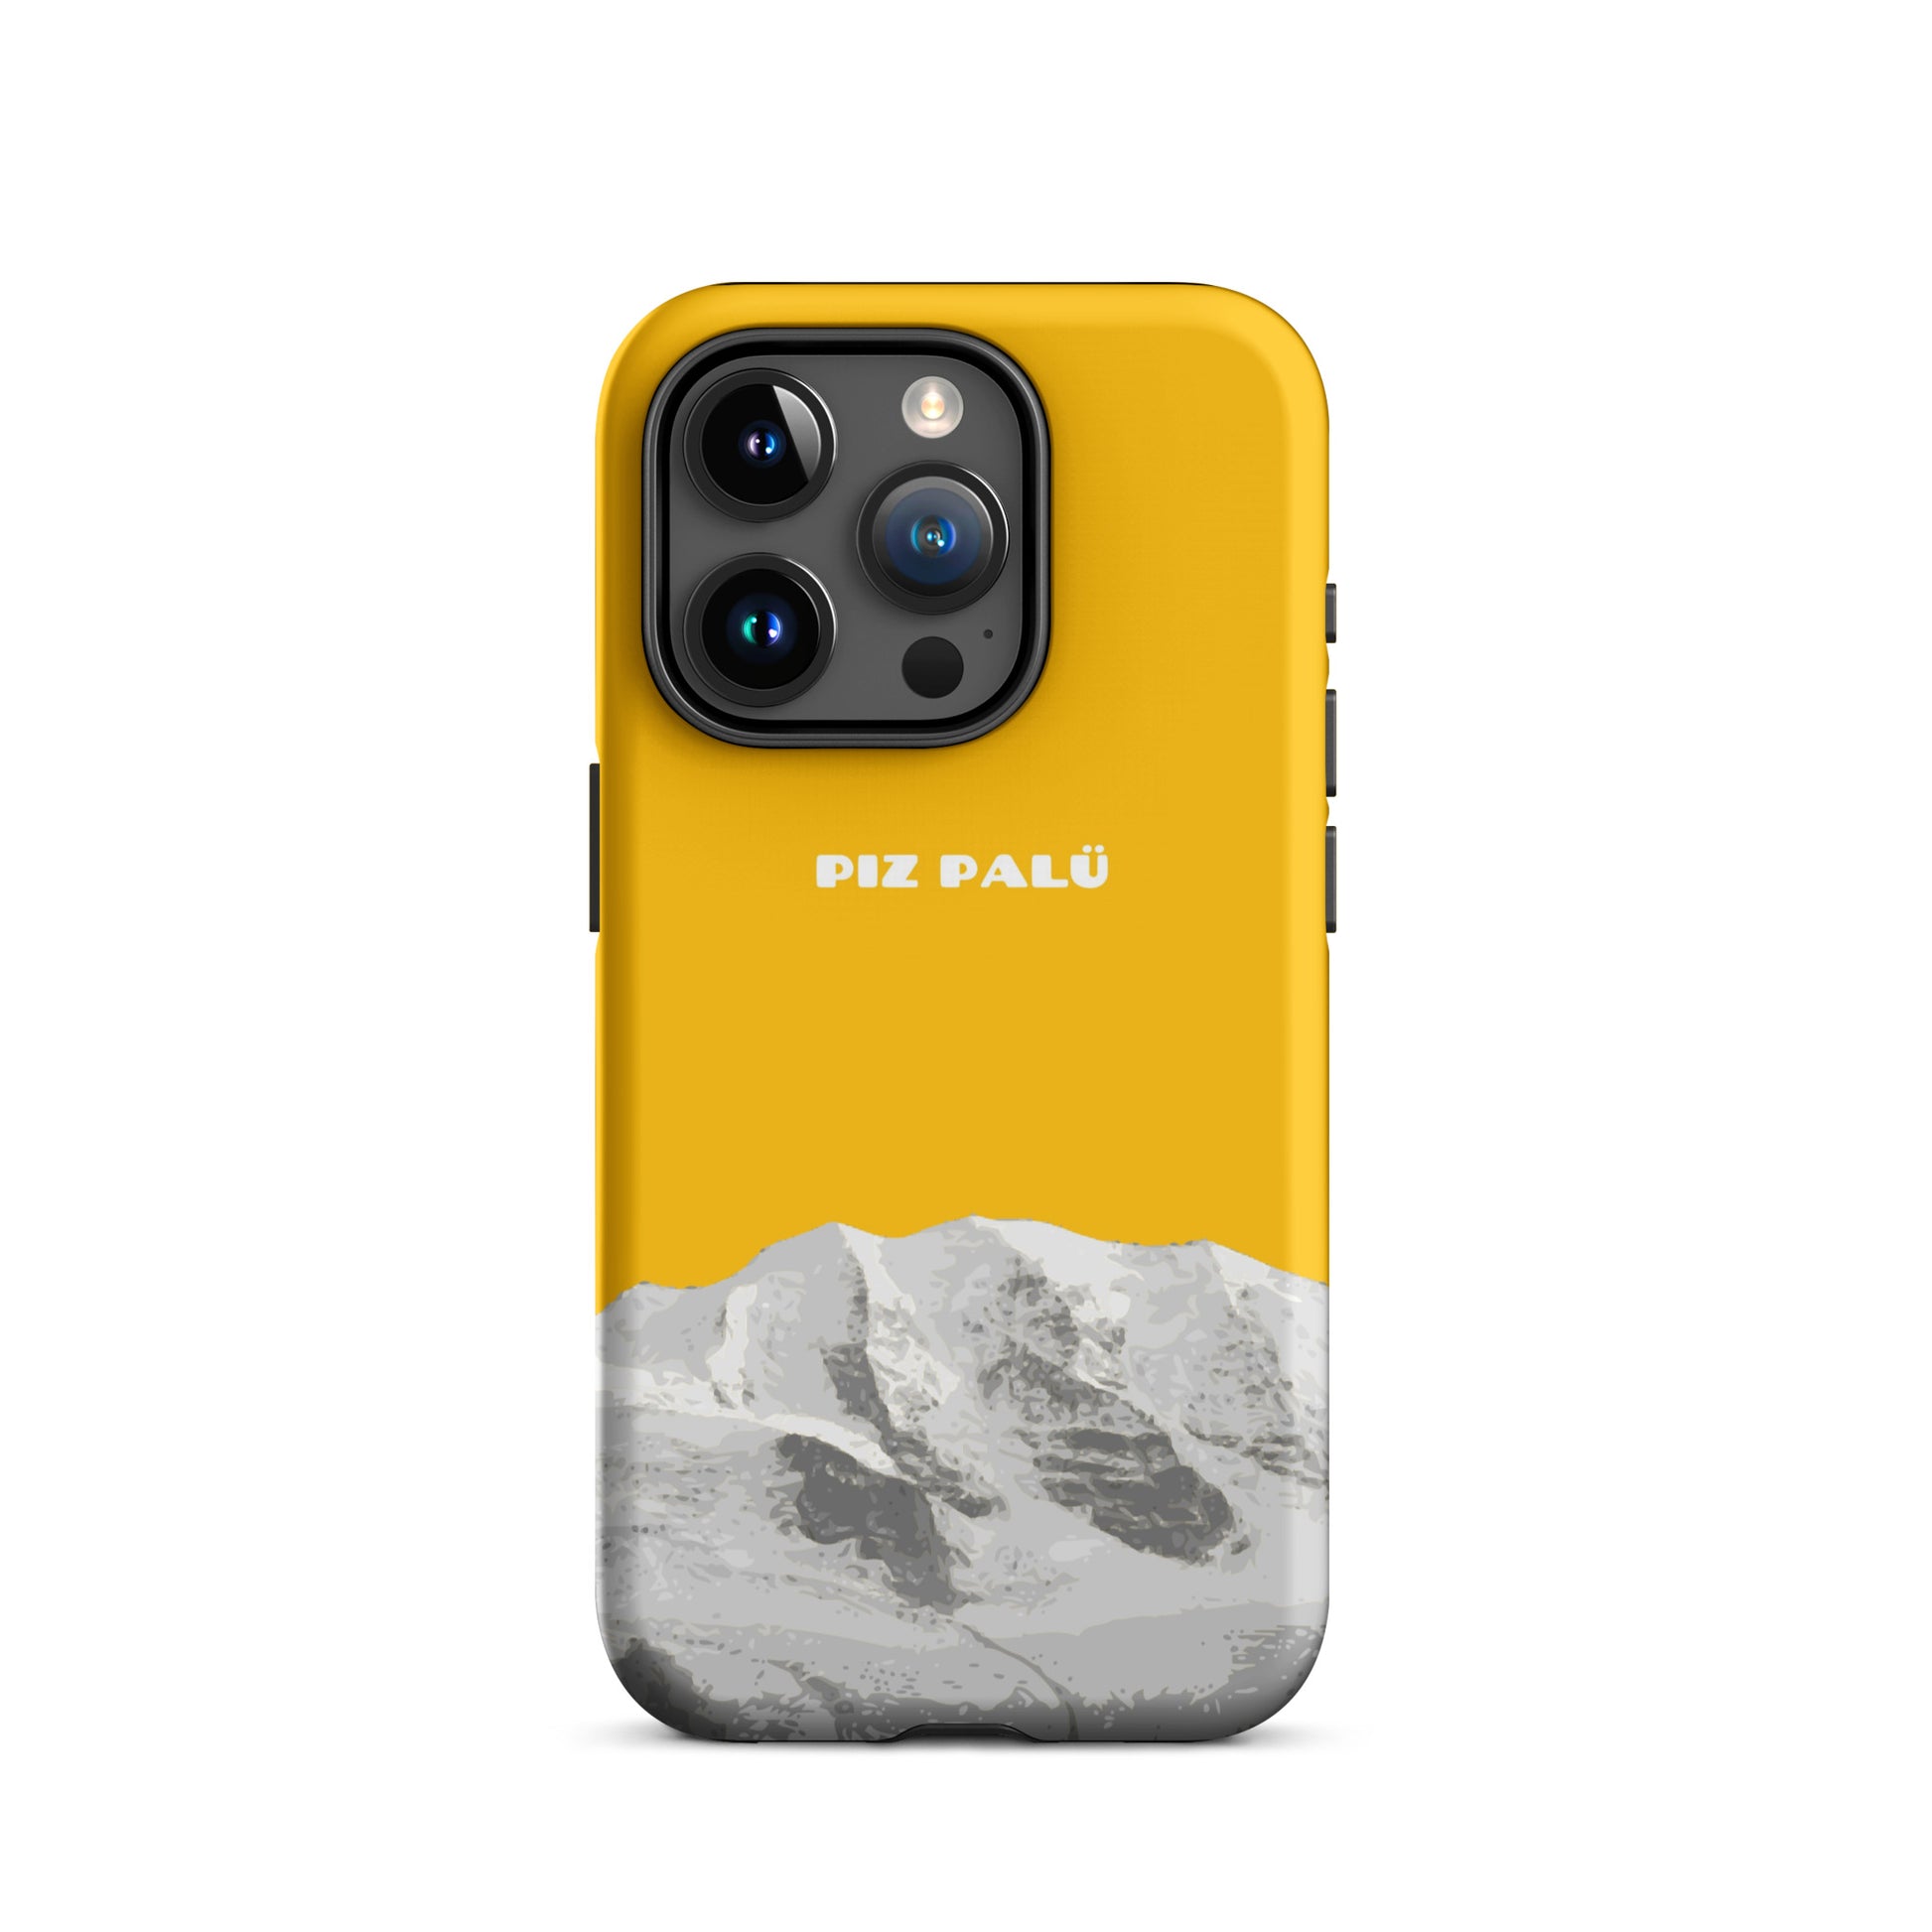 Hülle für das iPhone 15 Pro von Apple in der Farbe Goldgelb, dass den Piz Palü in Graubünden zeigt.